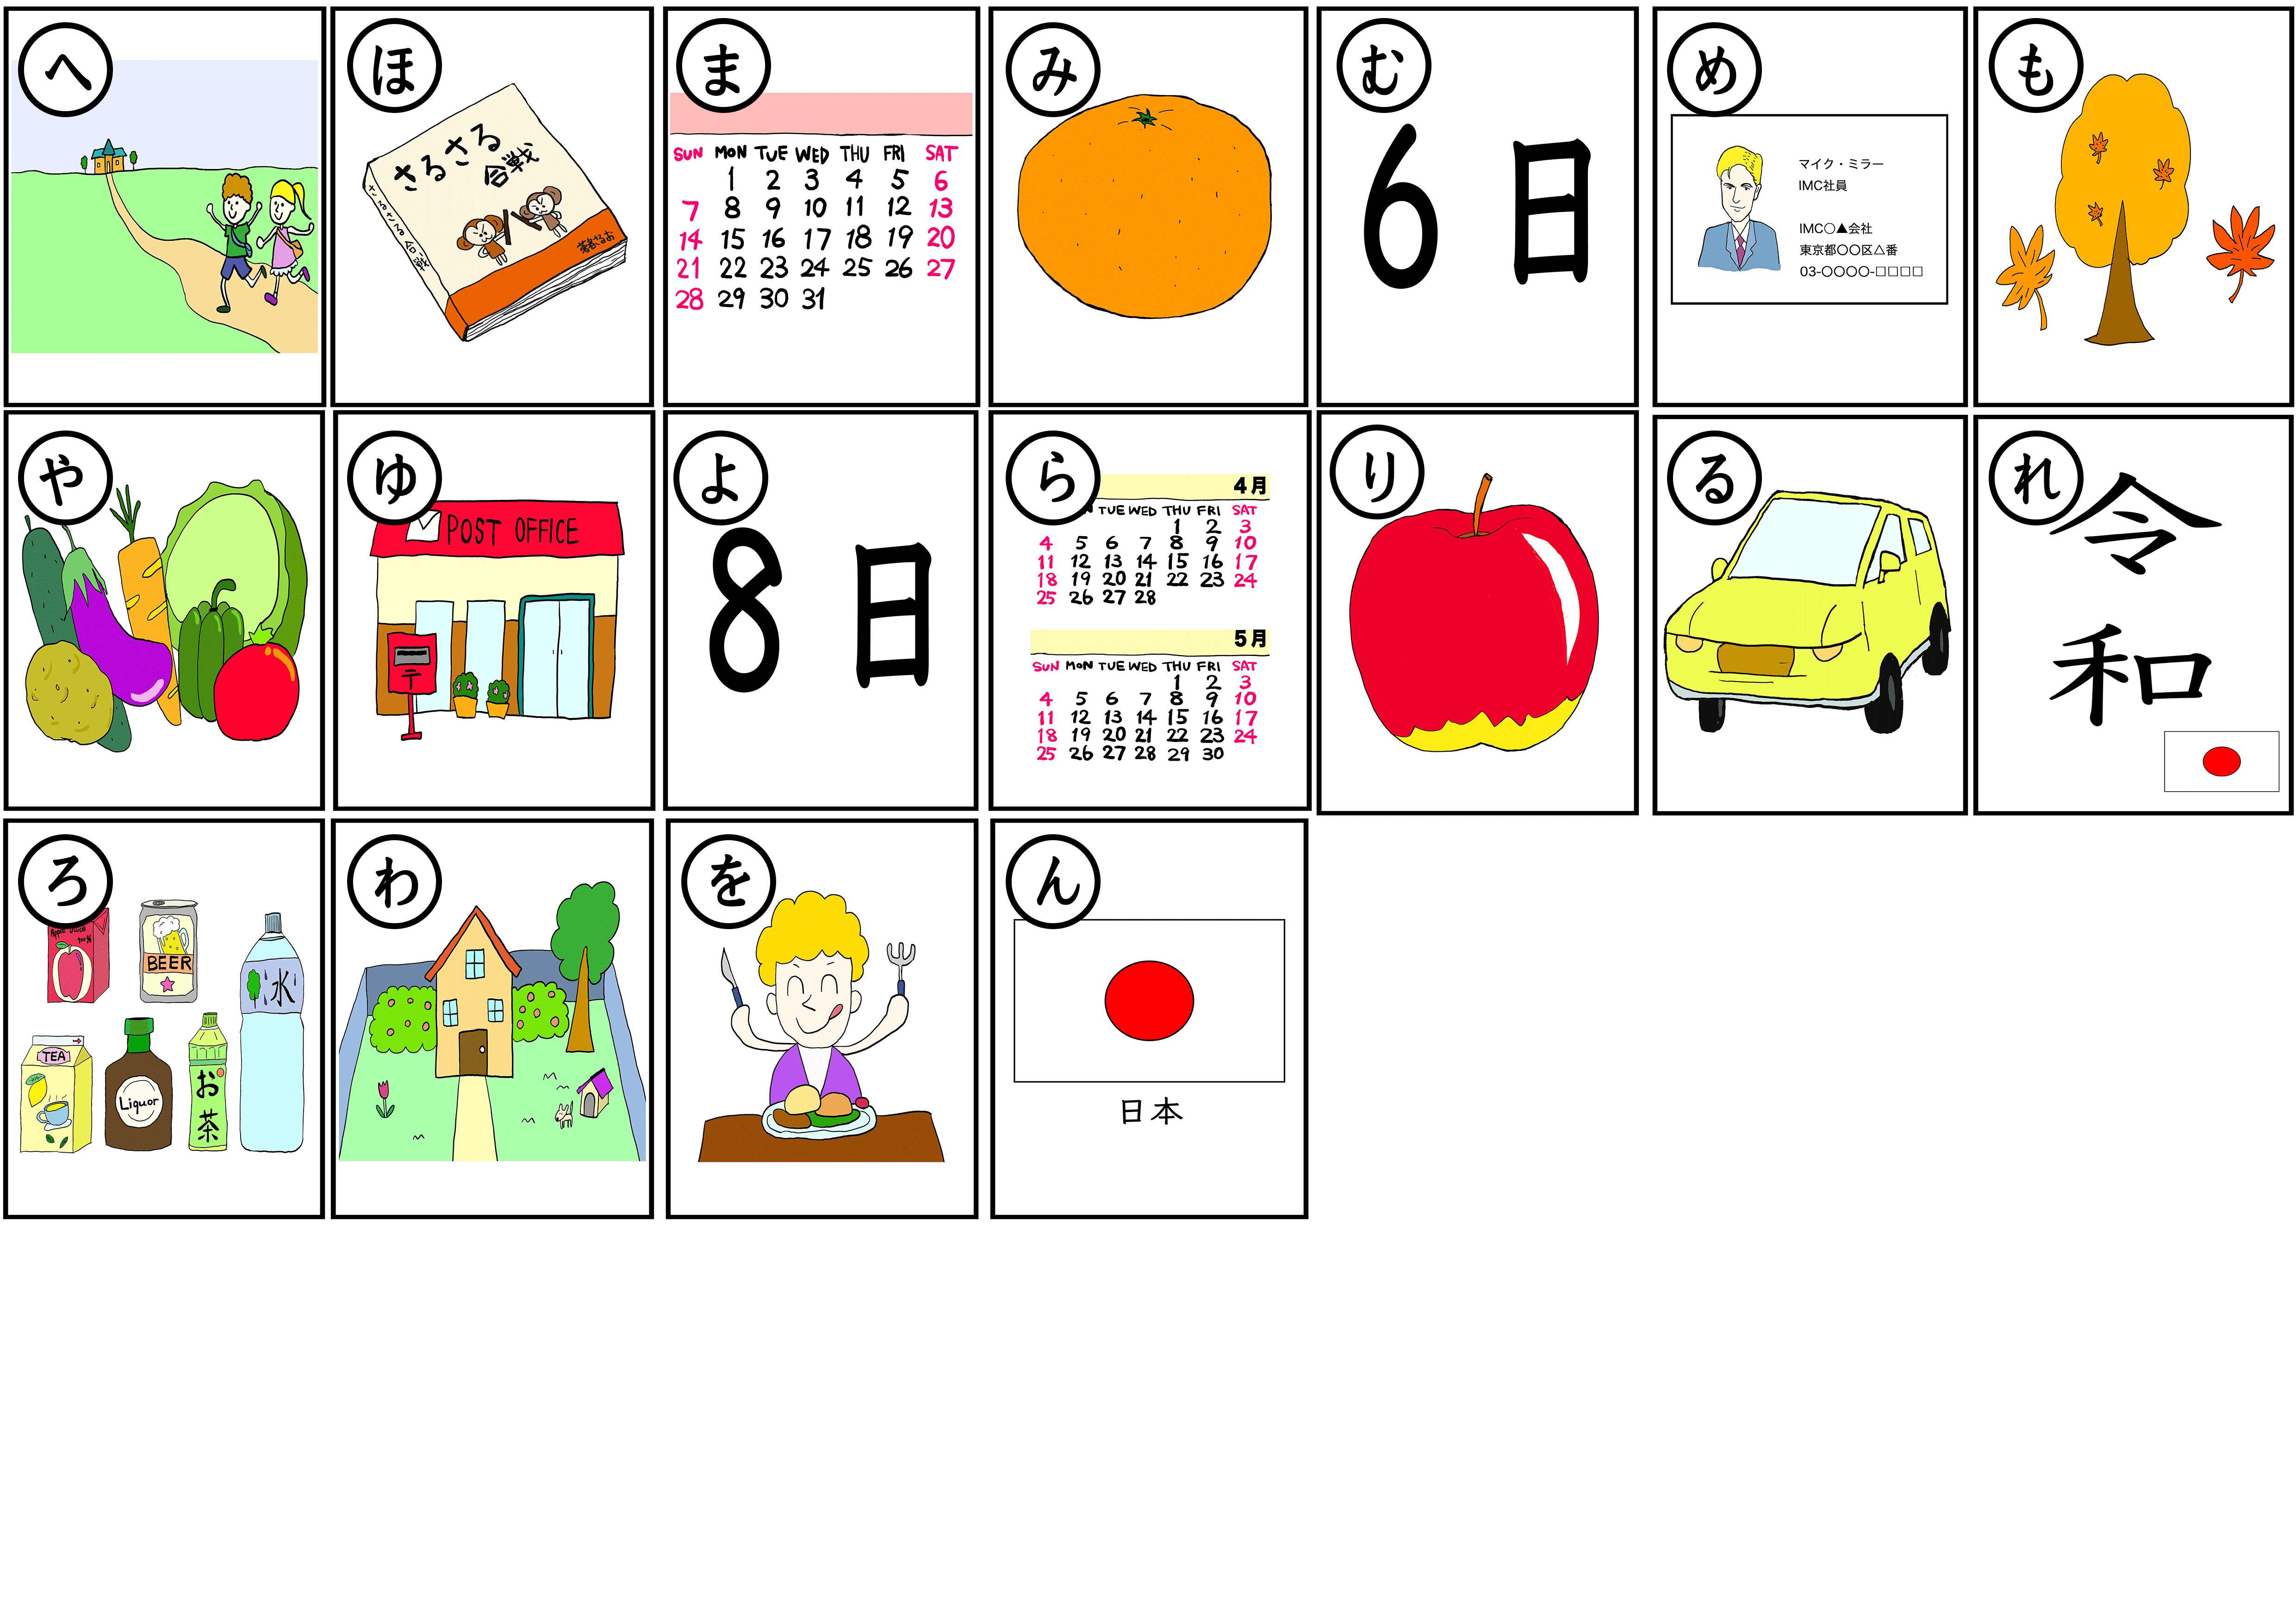 日本語教師学習教材【カルタゲーム】